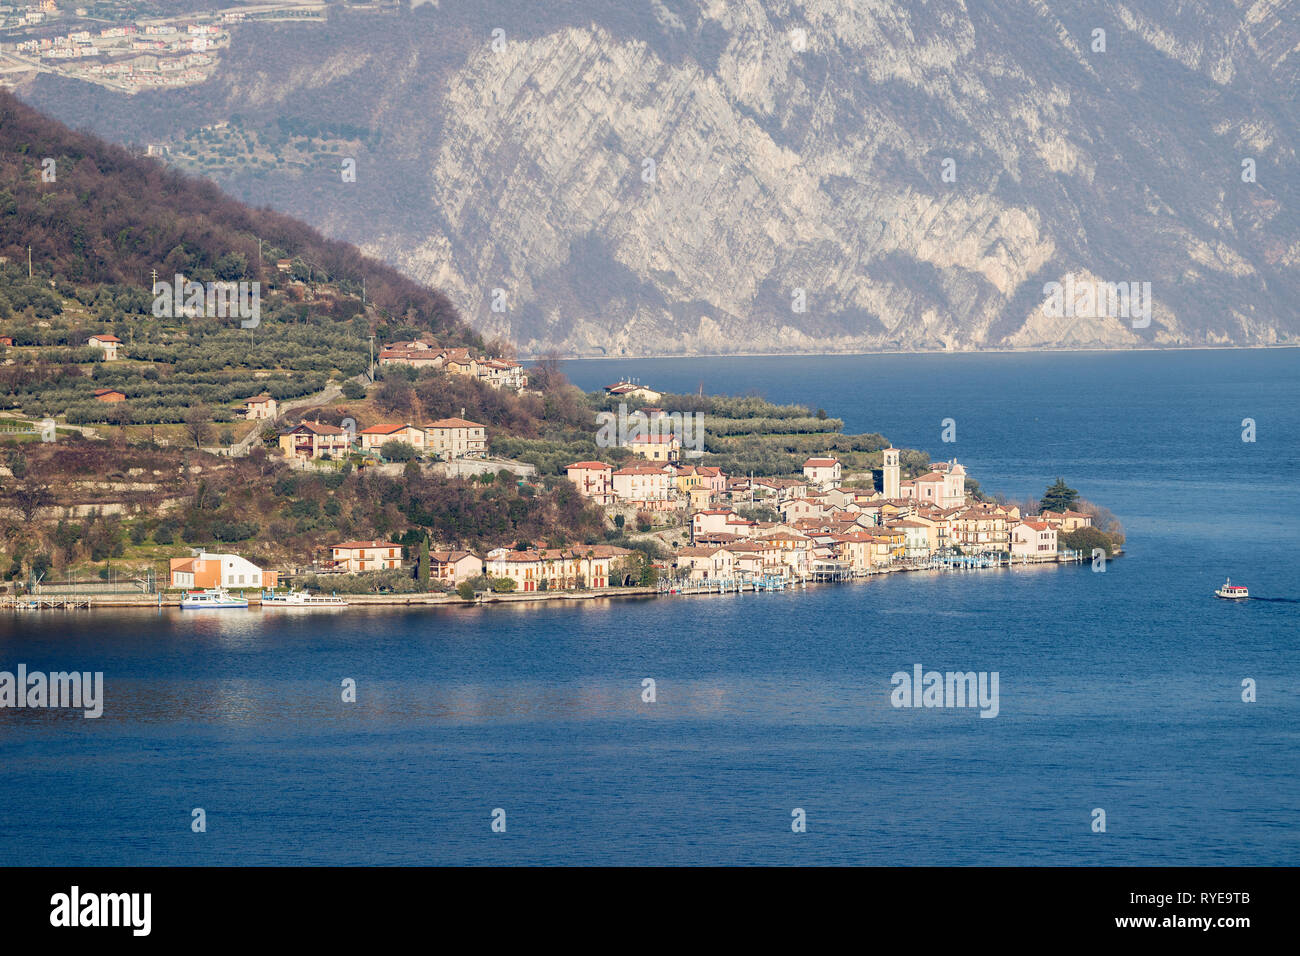 Il borgo di Carzano sul Monte Isola nel lago d'Iseo, Lombardia, Italia Foto Stock